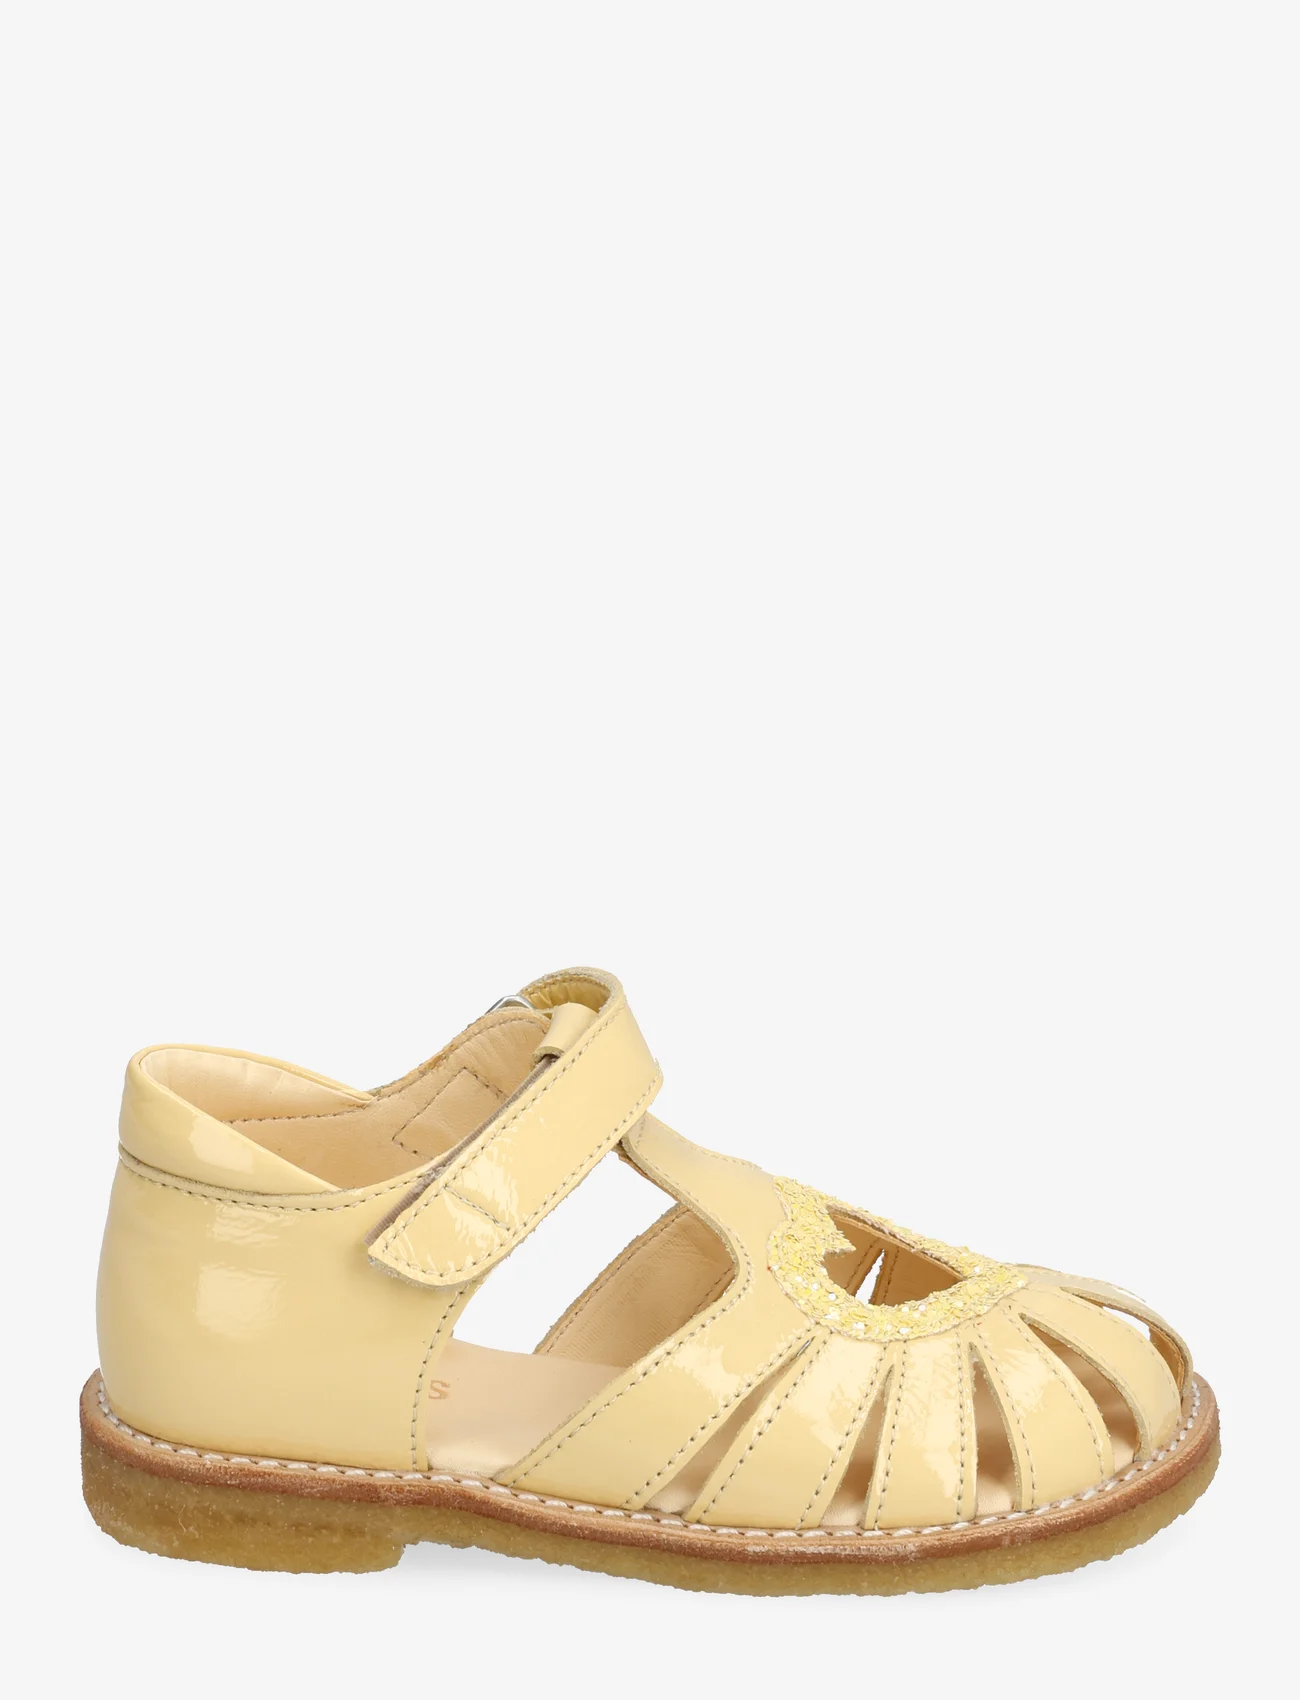 ANGULUS - Sandals - flat - closed toe - - vasaras piedāvājumi - 2706/2825 mellow yellow/pineap - 1